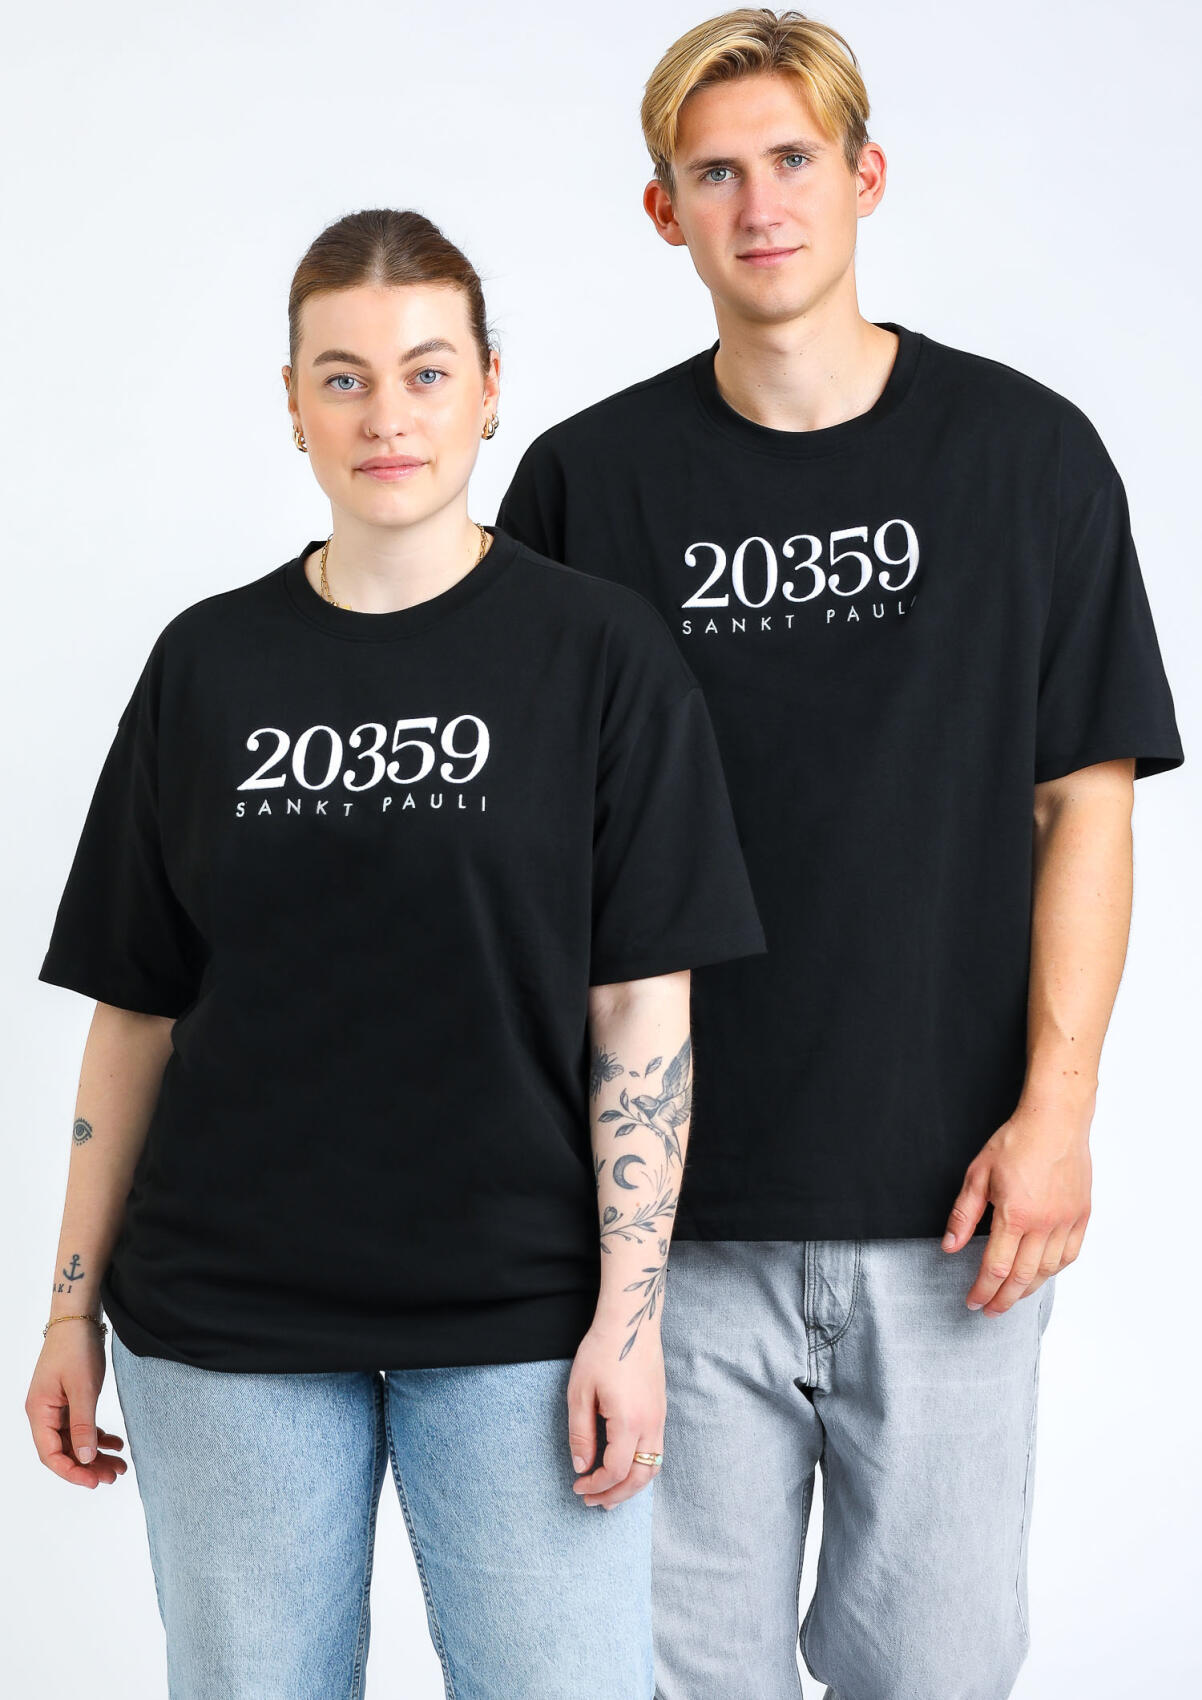 T-Shirt "20359"